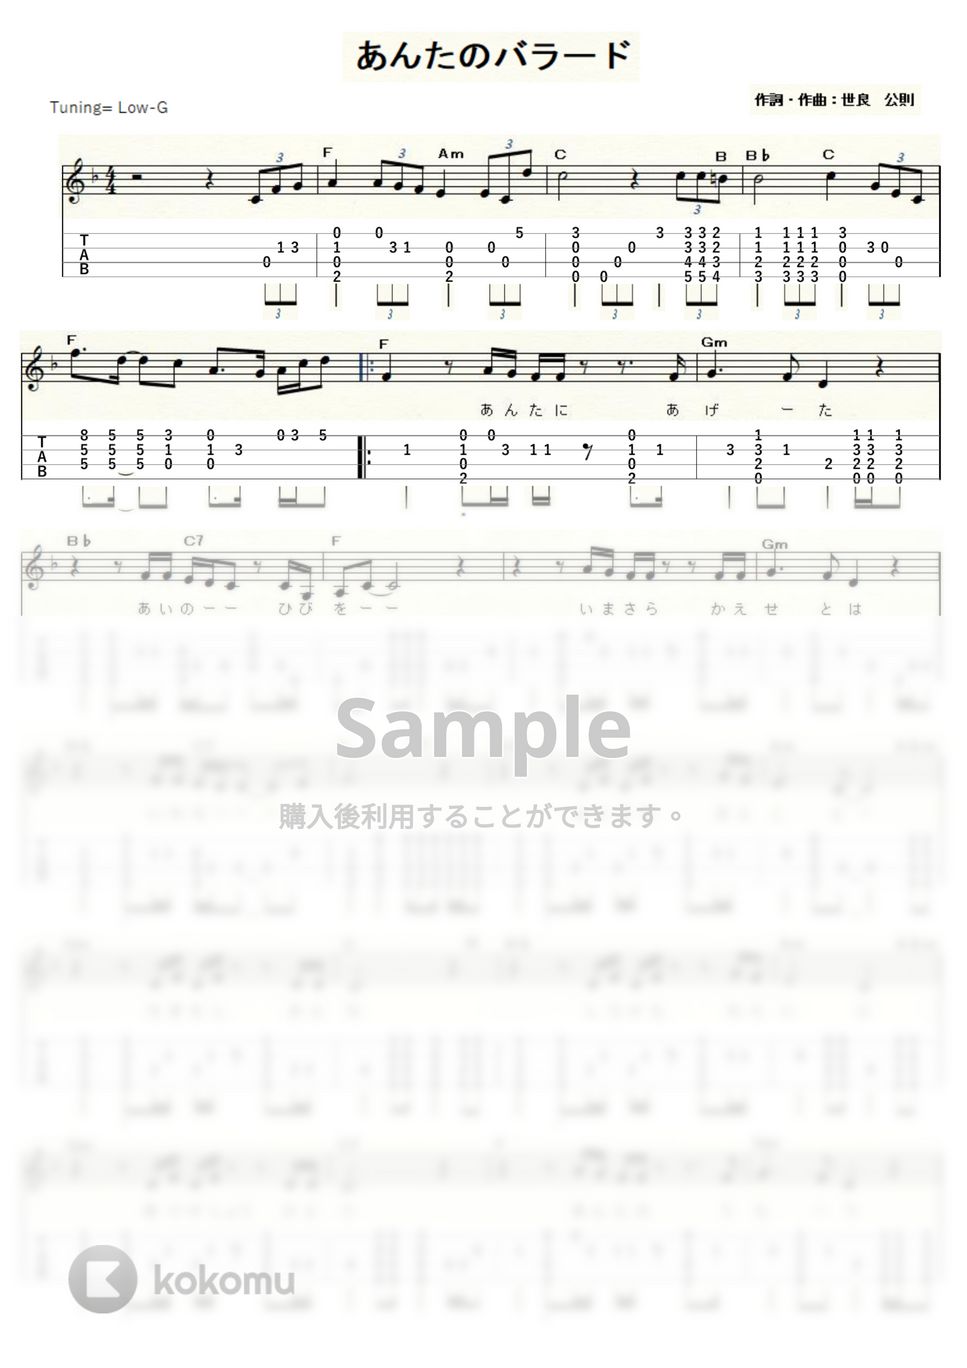 世良公則＆ツイスト - あんたのバラード (ｳｸﾚﾚｿﾛ / Low-G / 中級) by ukulelepapa